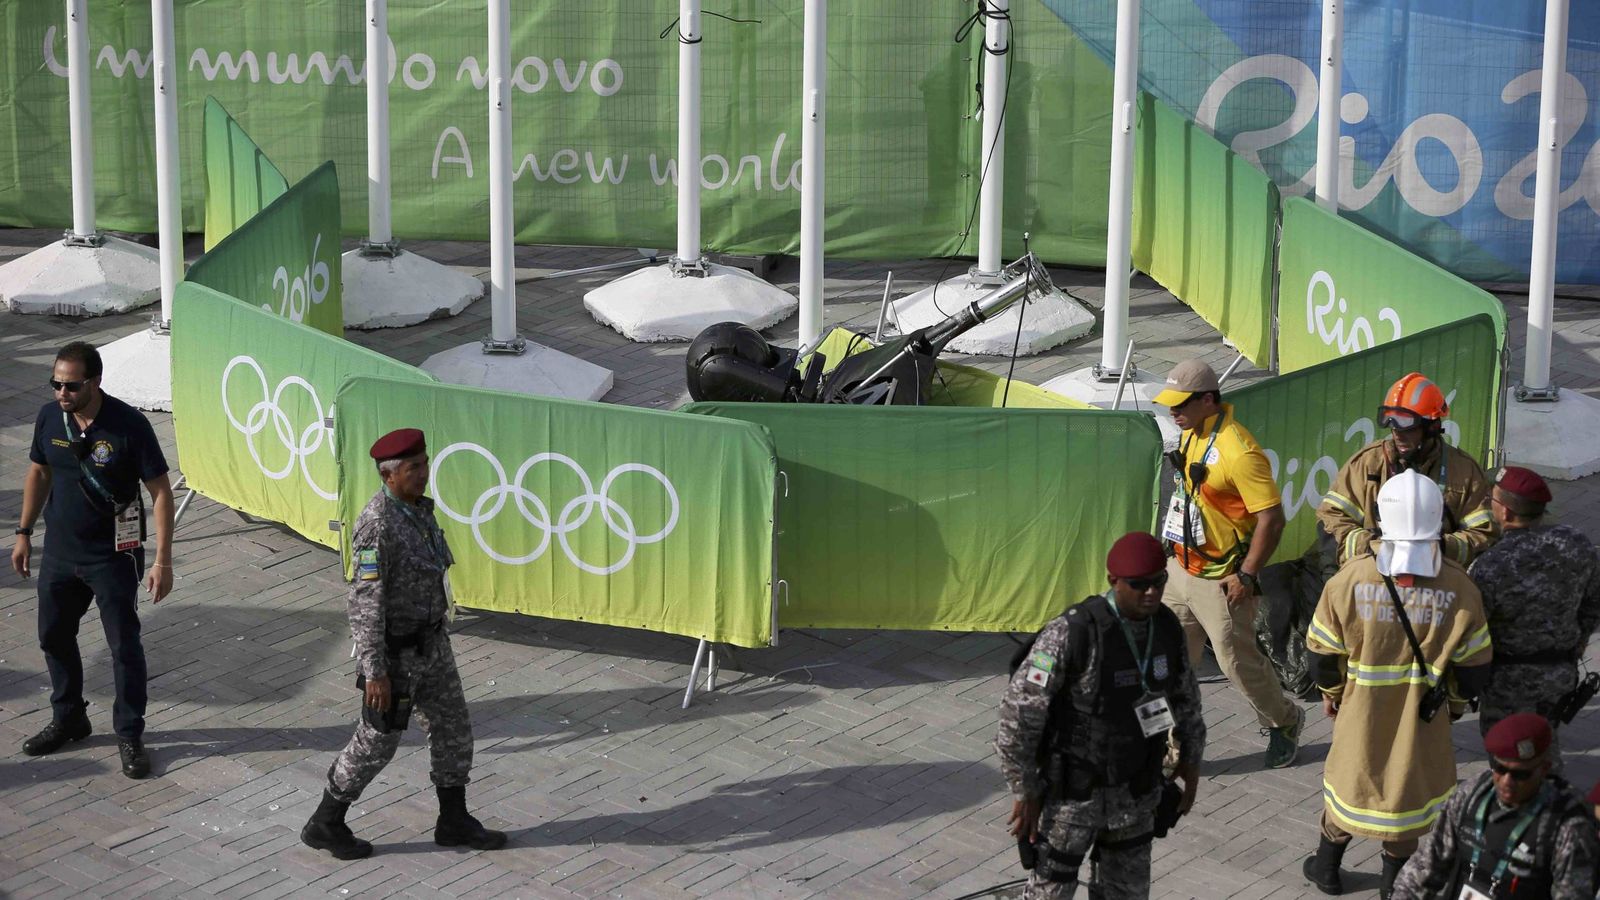 La caída cámara en el Parque Olímpico de Río provoca tres heridos